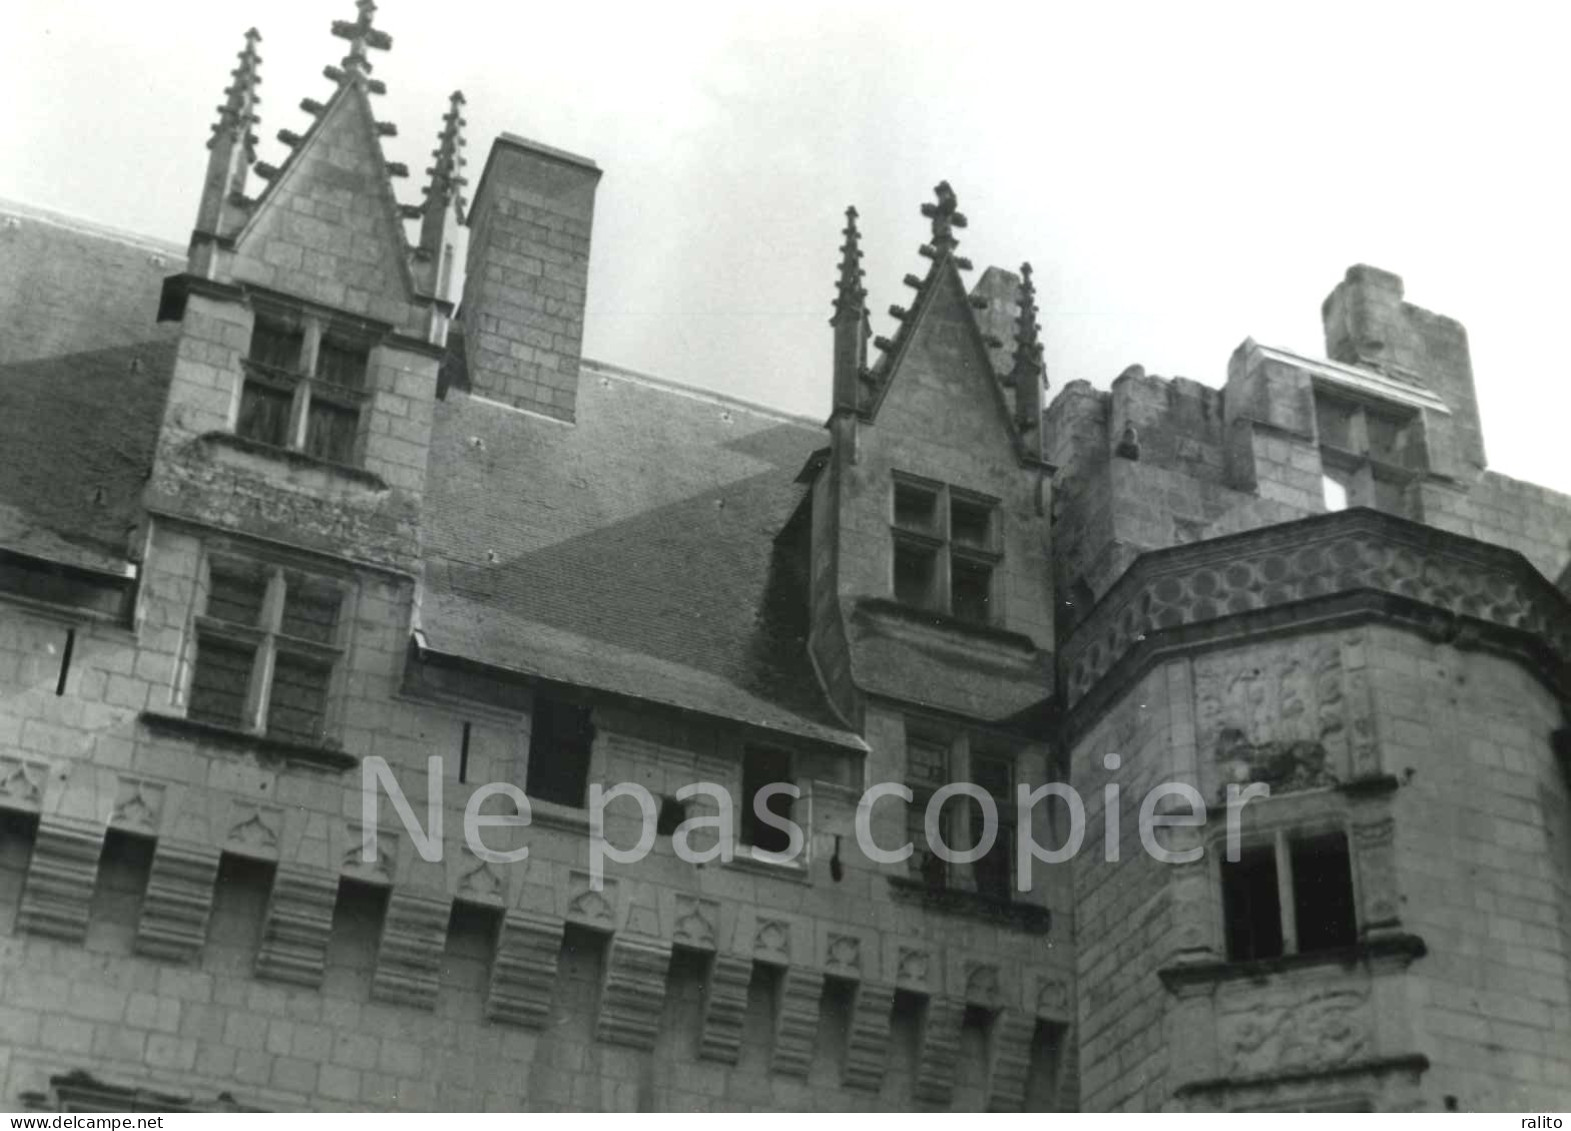 MONTSOREAU Vers 1960 Le Château Photo 14 X 20 Cm MAINE-ET-LOIRE - Lugares